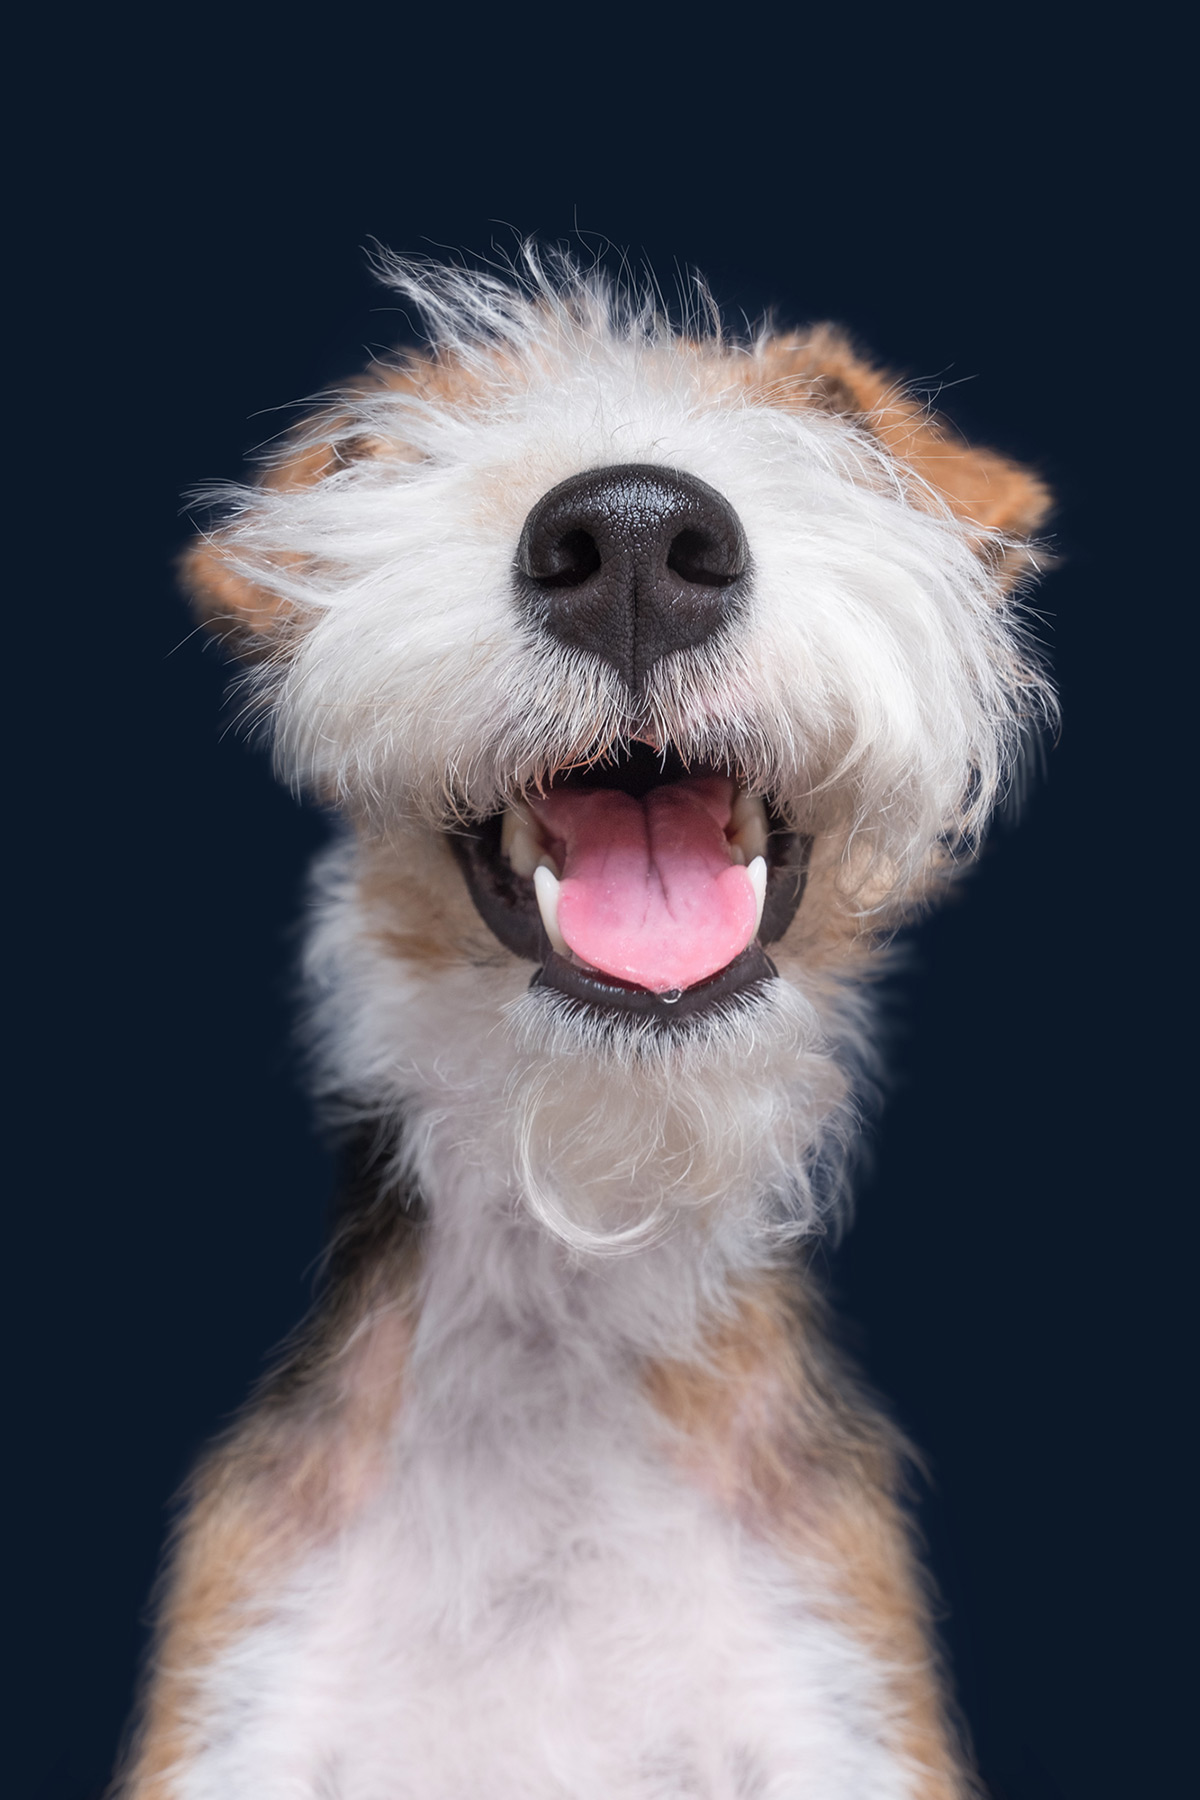 Os retratos engraçados que revelam as emoções fugazes dos cães 06